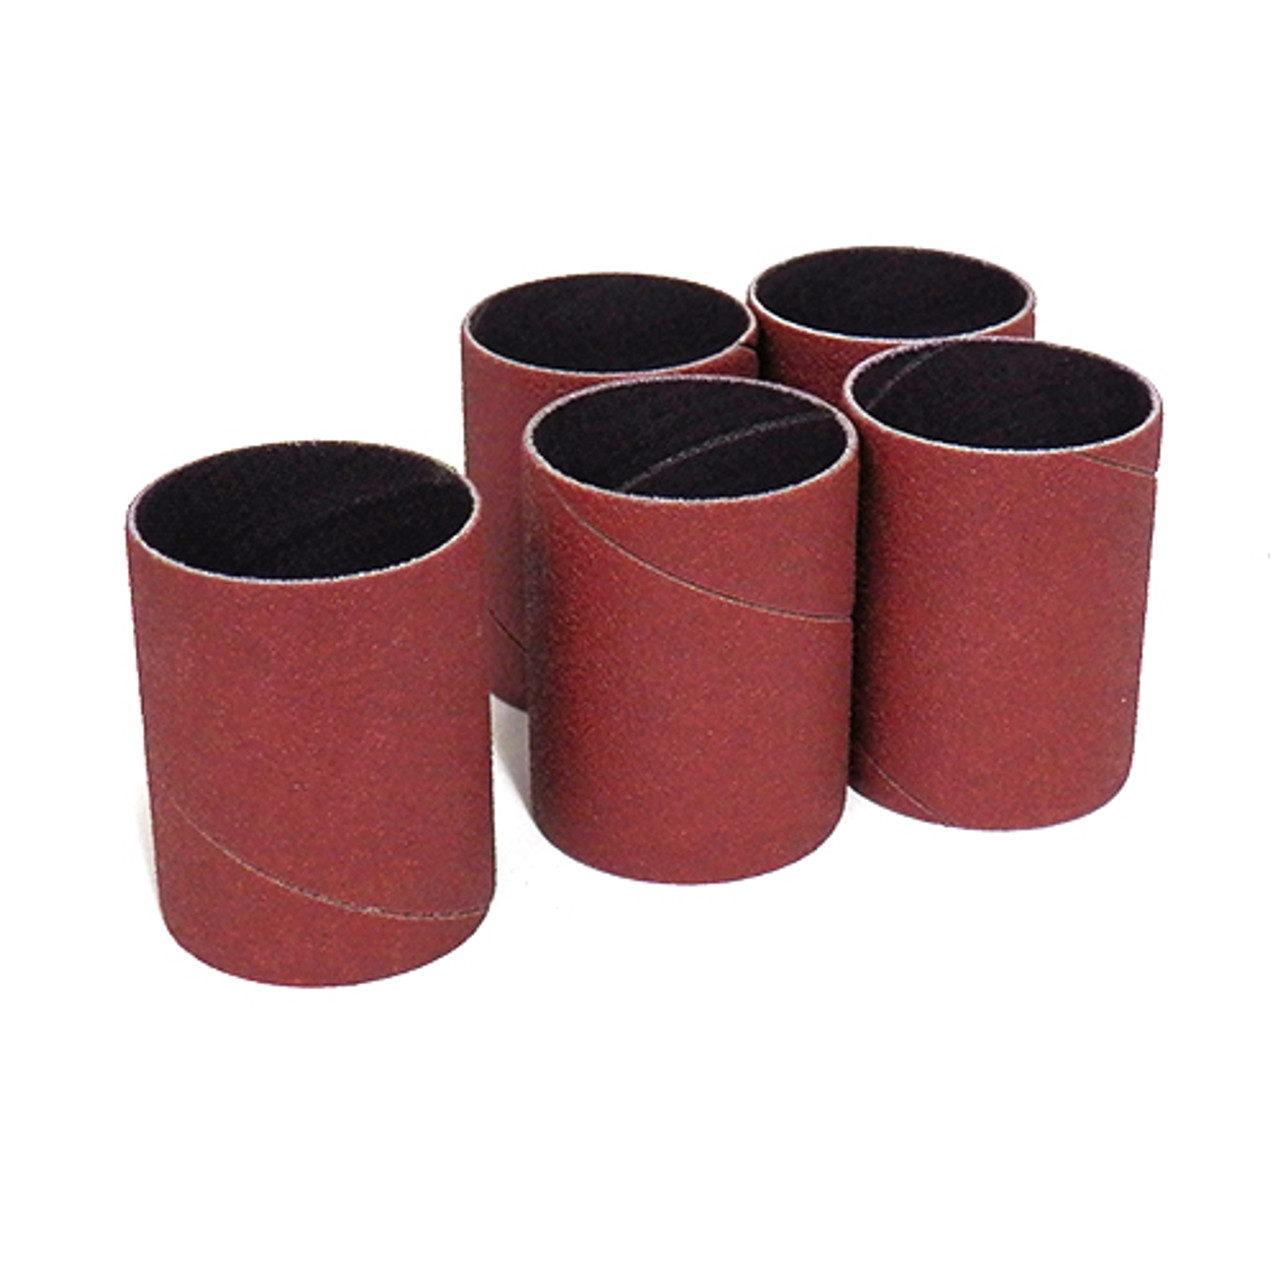 Klingspor Abrasives Aluminum Oxide Sanding Sleeves, 1-1/2"X 2" 150 Grit, 5pk